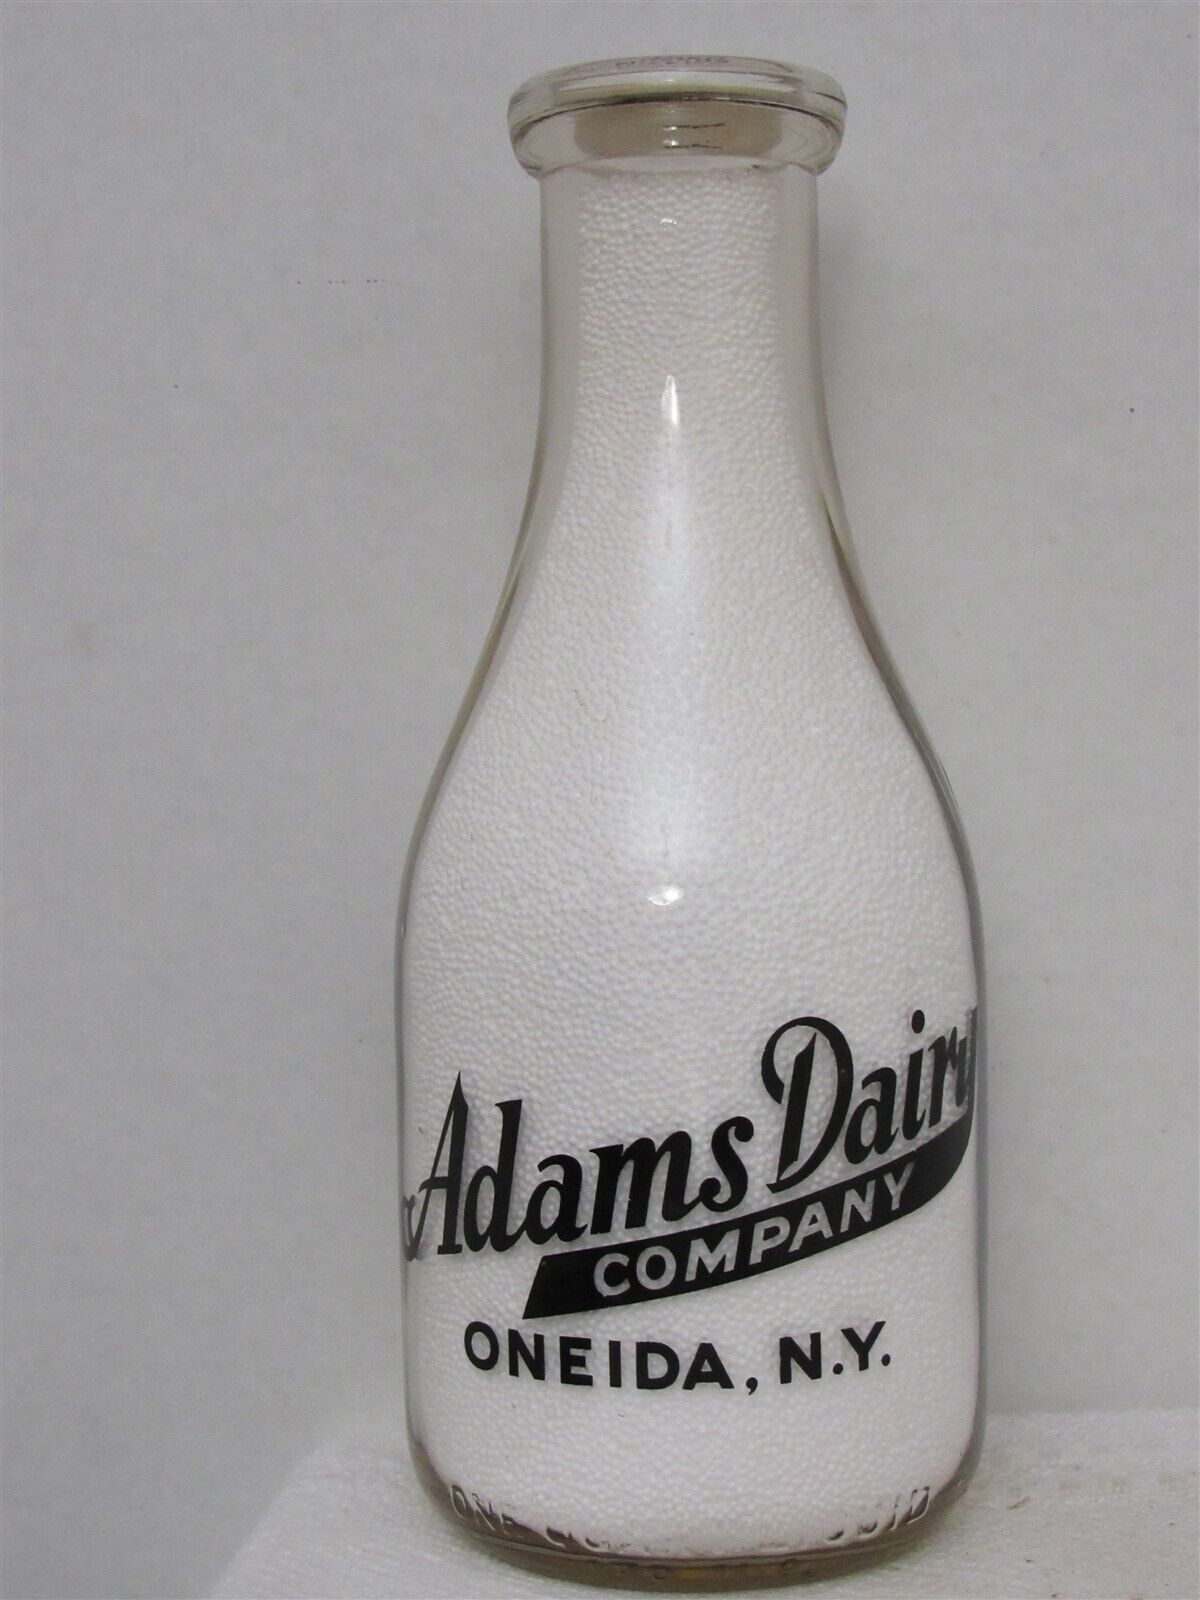 TRPQ Milk Bottle Adams Dairy Company Oneida NY MADISON COUNTY 1941 Very Rare